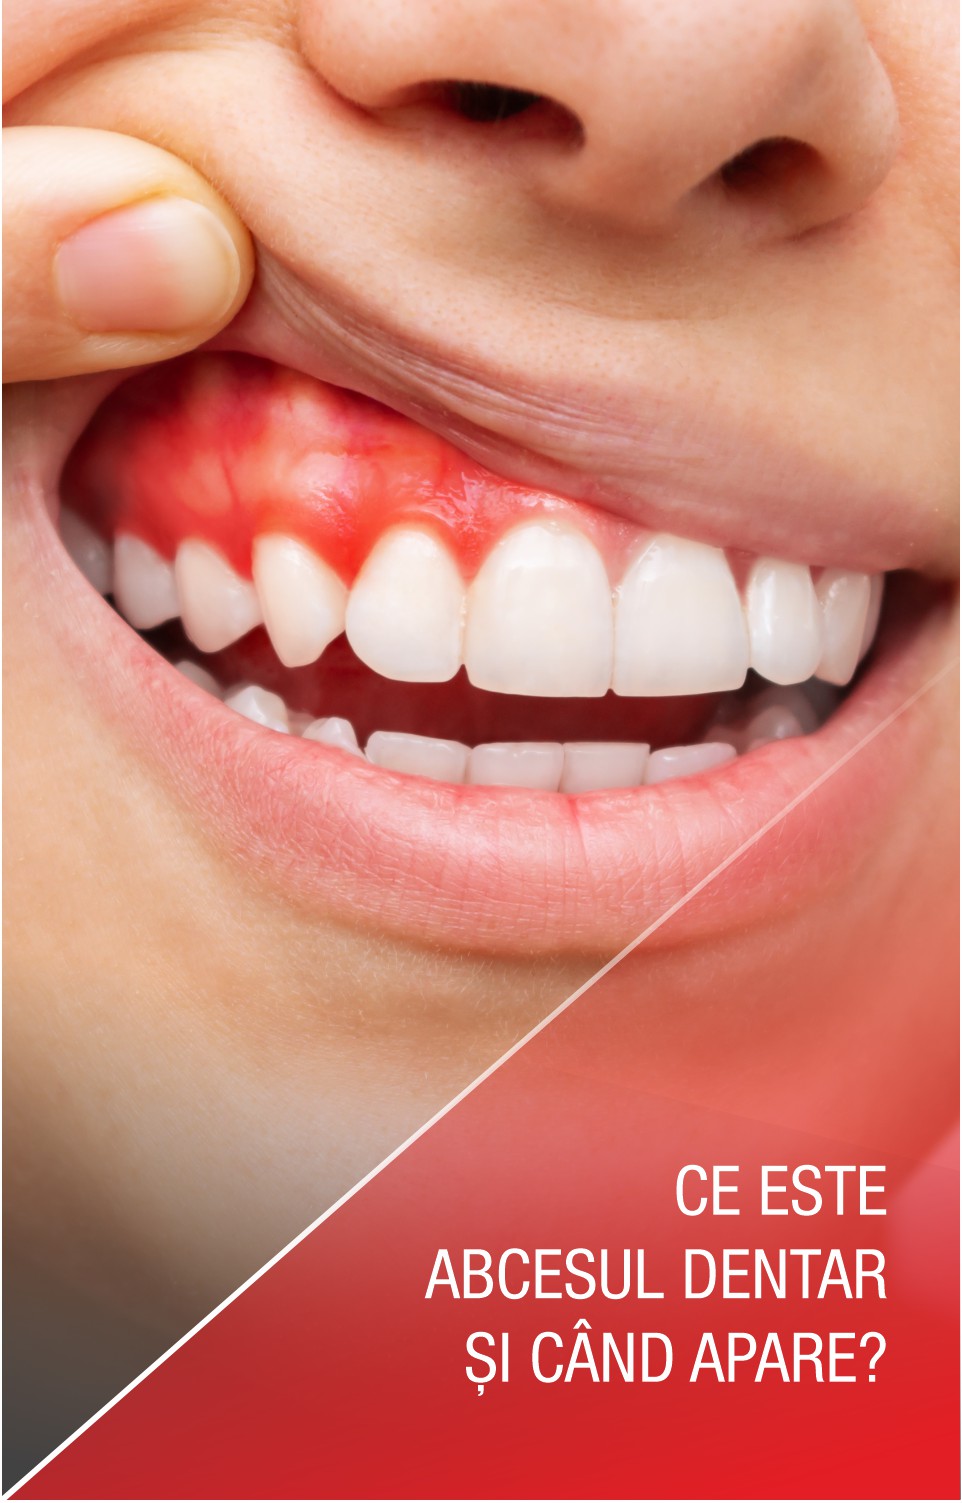 Ce este abcesul dentar și cum poate fi tratat?